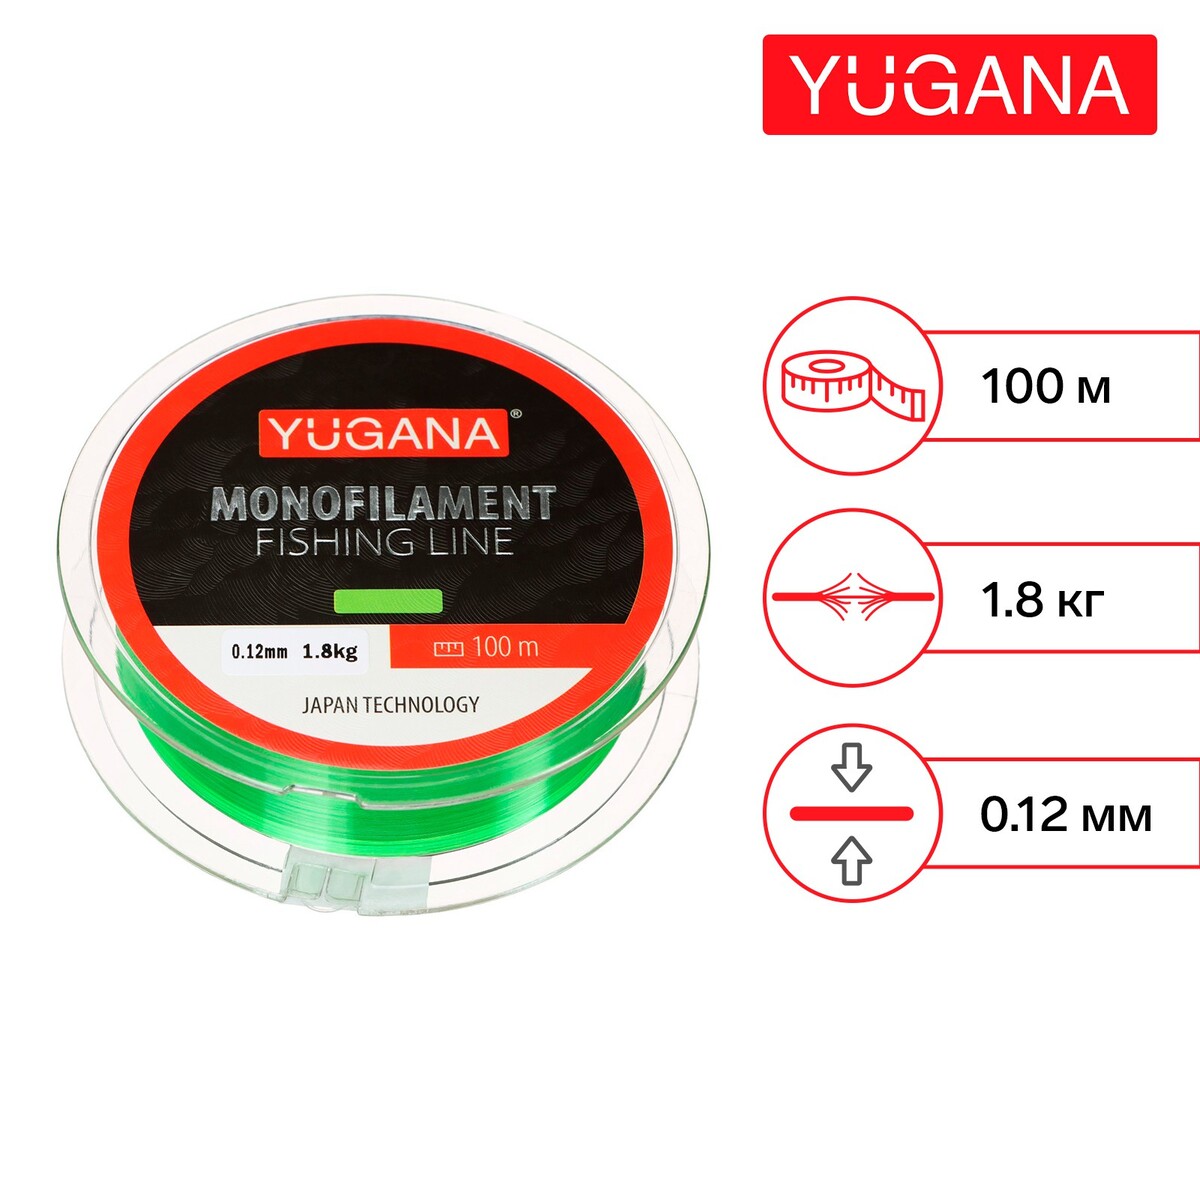 Леска монофильная yugana, диаметр 0.12 мм, тест 1.8 кг, 100 м, зеленая